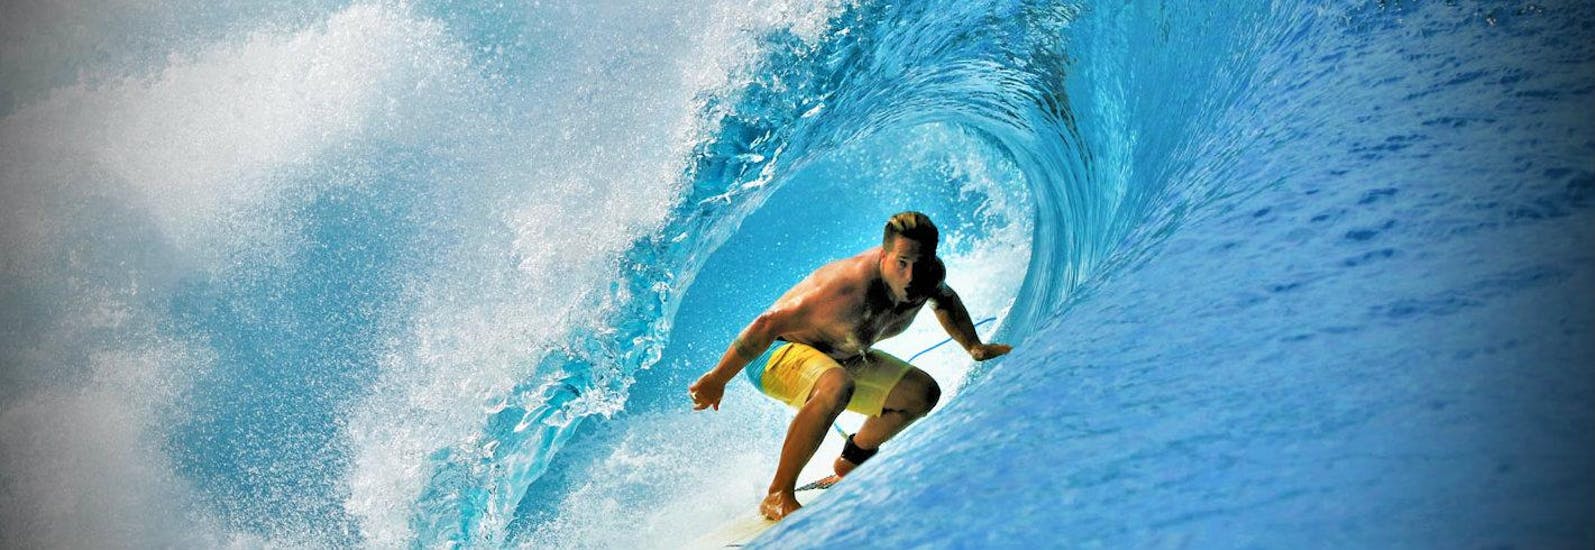 Lezioni di surf a Anglet da 14 anni per tutti i livelli.